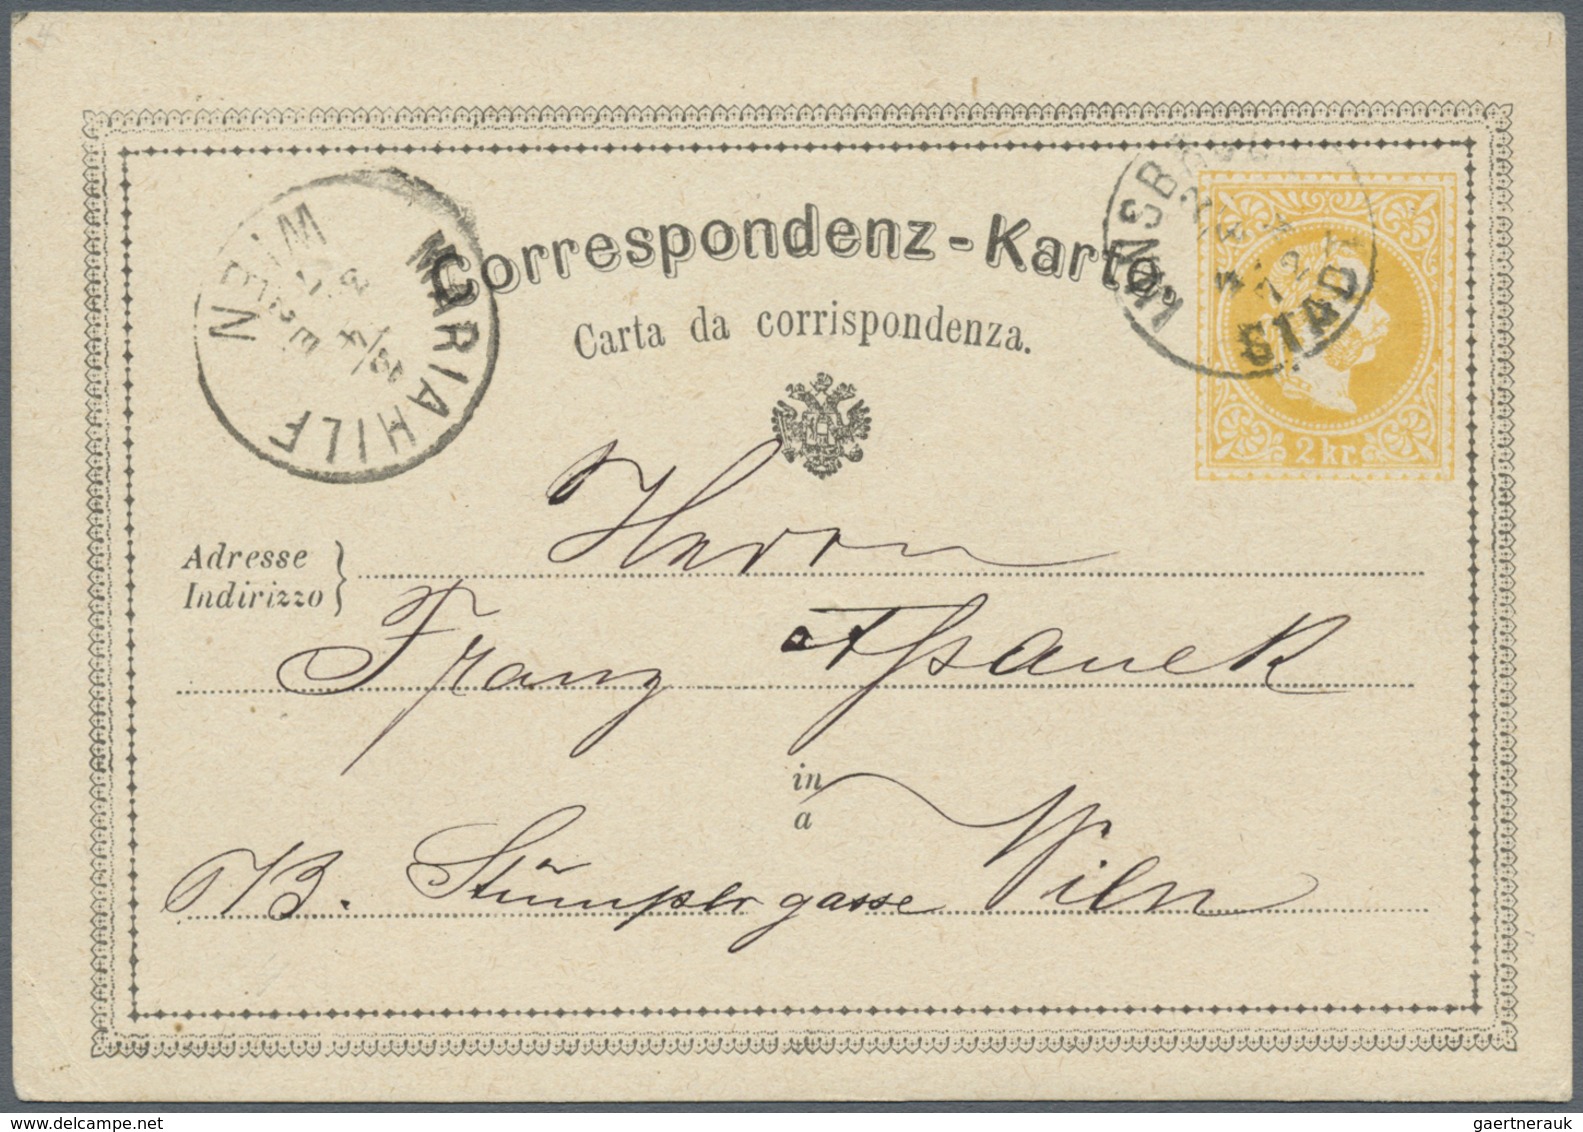 GA Österreich - Ganzsachen: 1870/1872, fünf Correspondenz-Karten 2 Kr. gelb in teils unterschiedl. Type